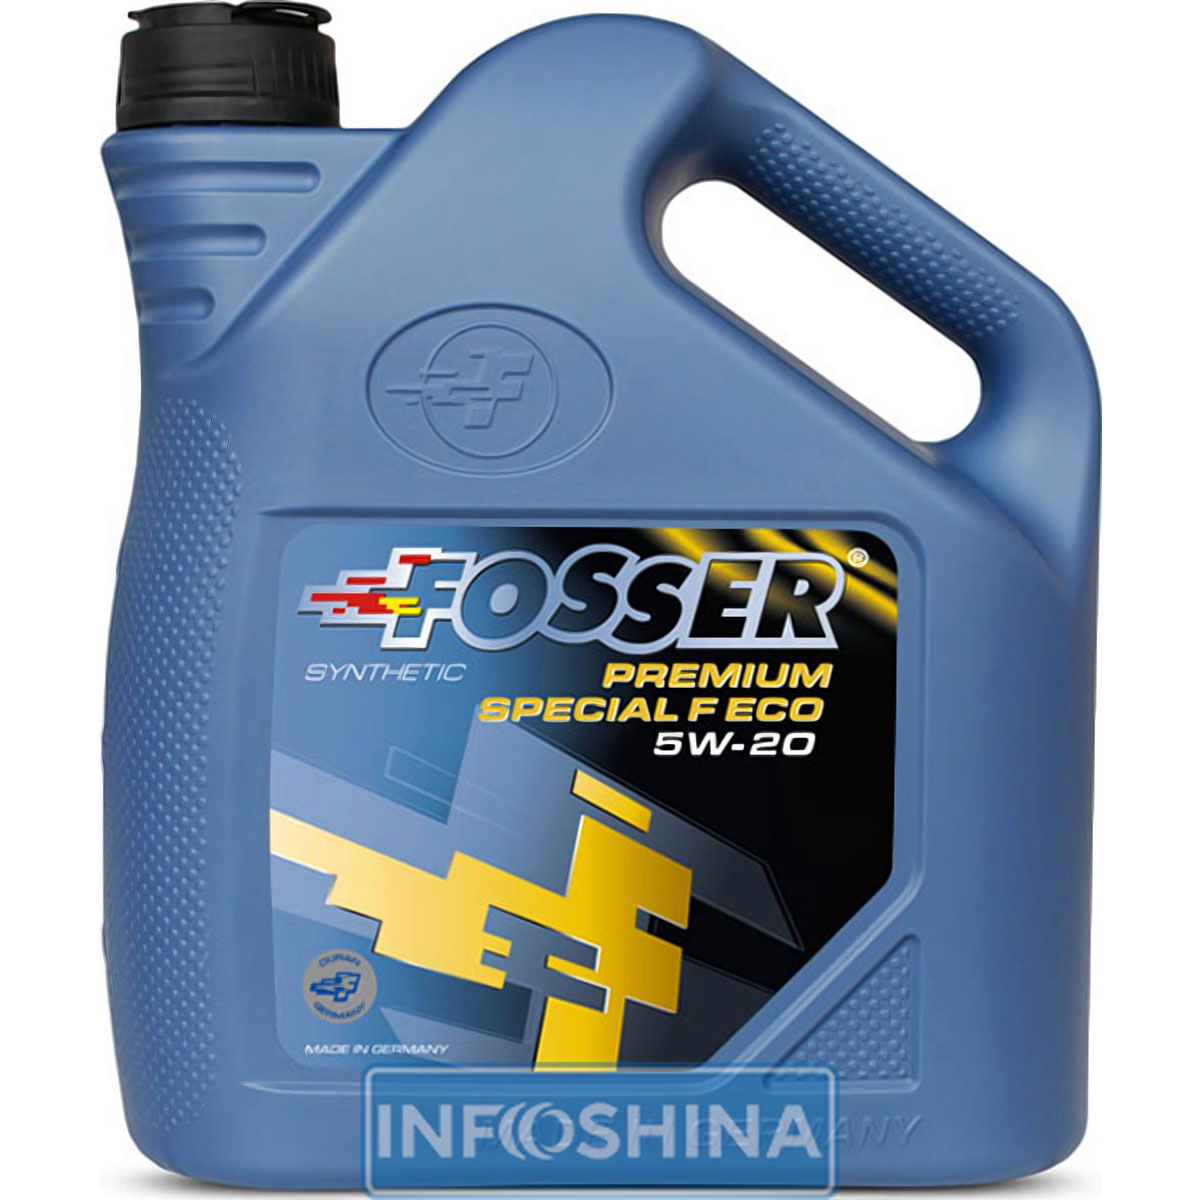 Fosser Premium Special F Eco 5W-20